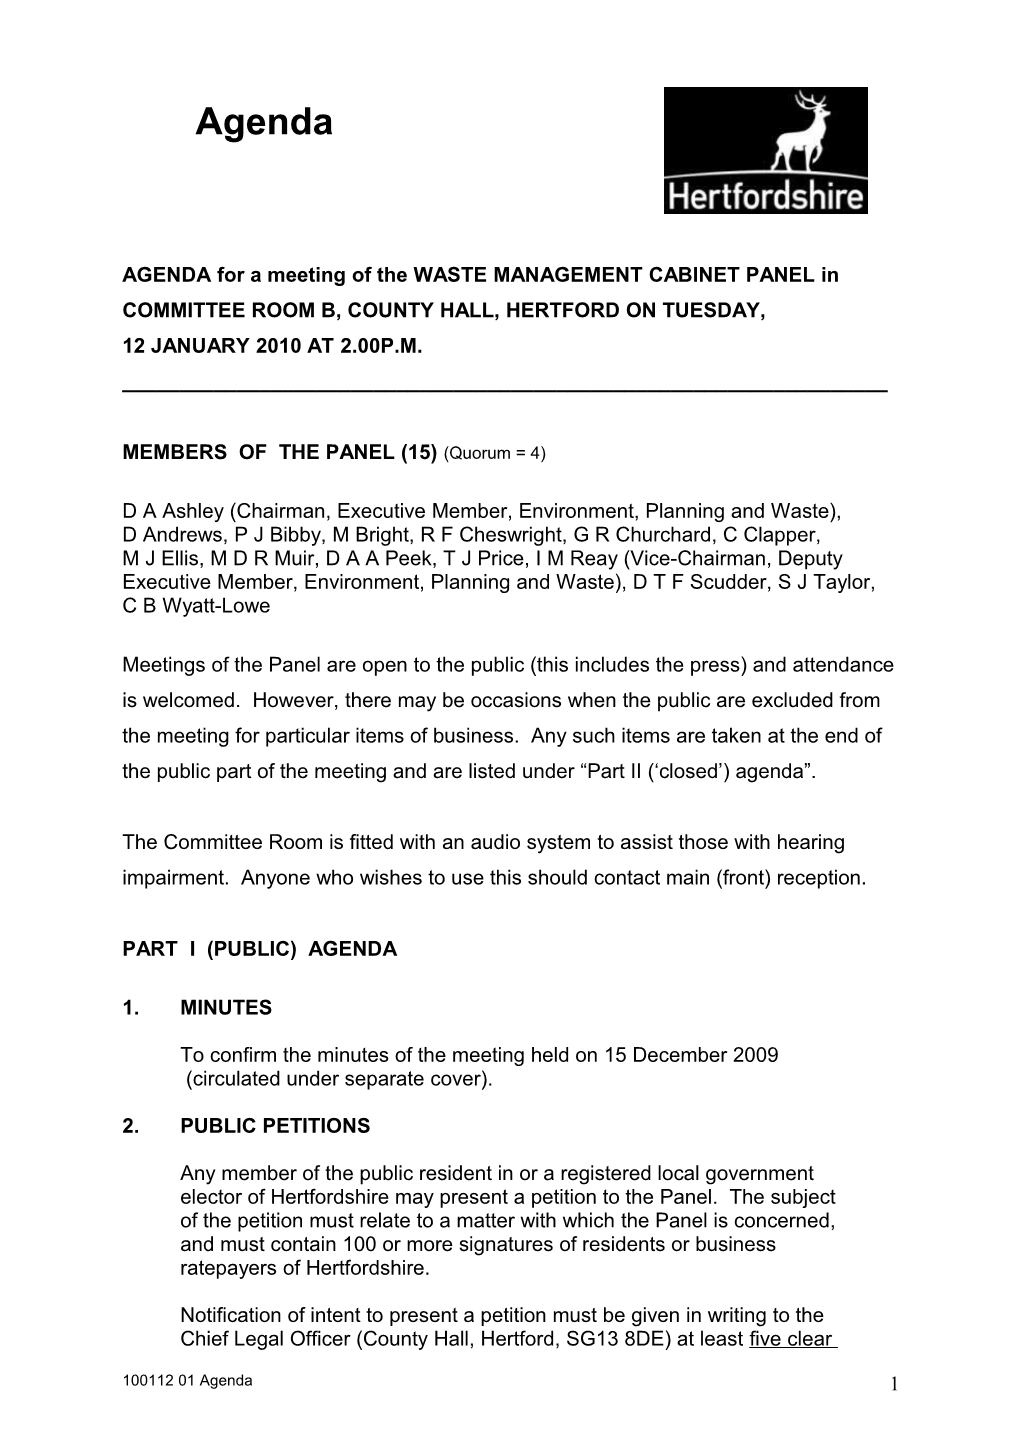 Waste Management Cabinet Panel Agenda 14 April 2009